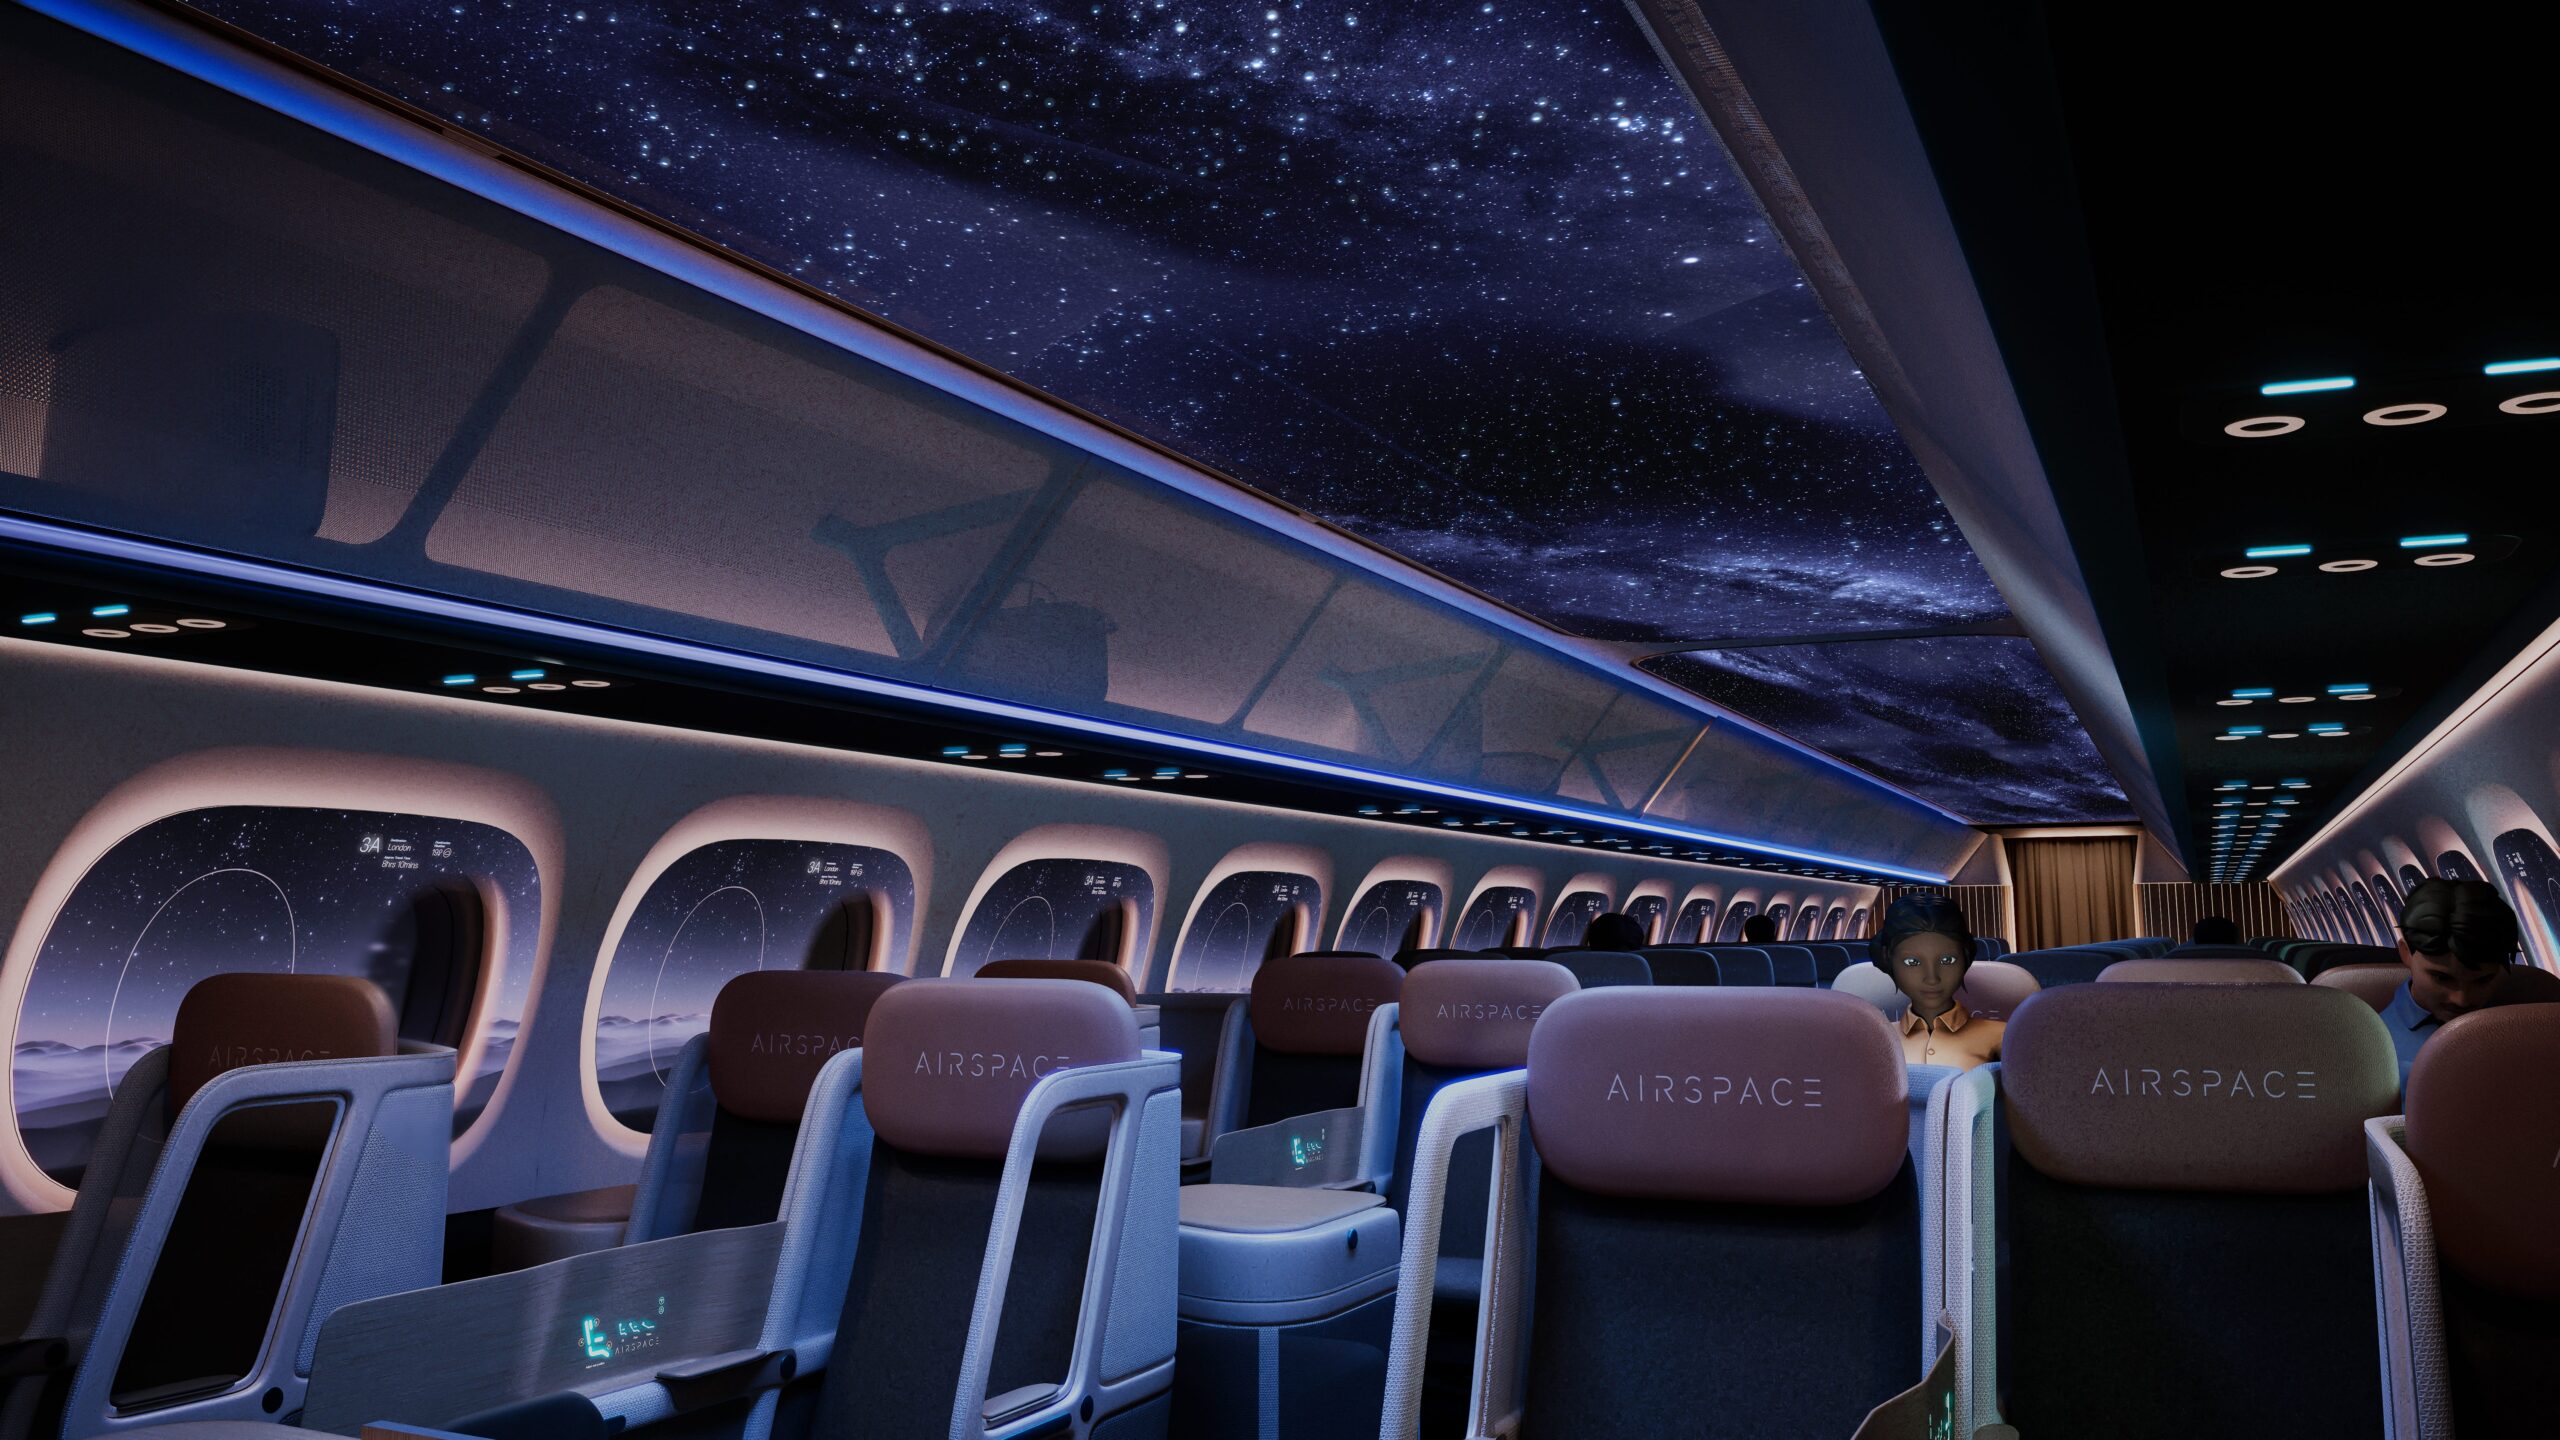 De Airspace Cabin Vision 2035+ rendering van Airbus toont de vliegtuigcabine bij nacht.